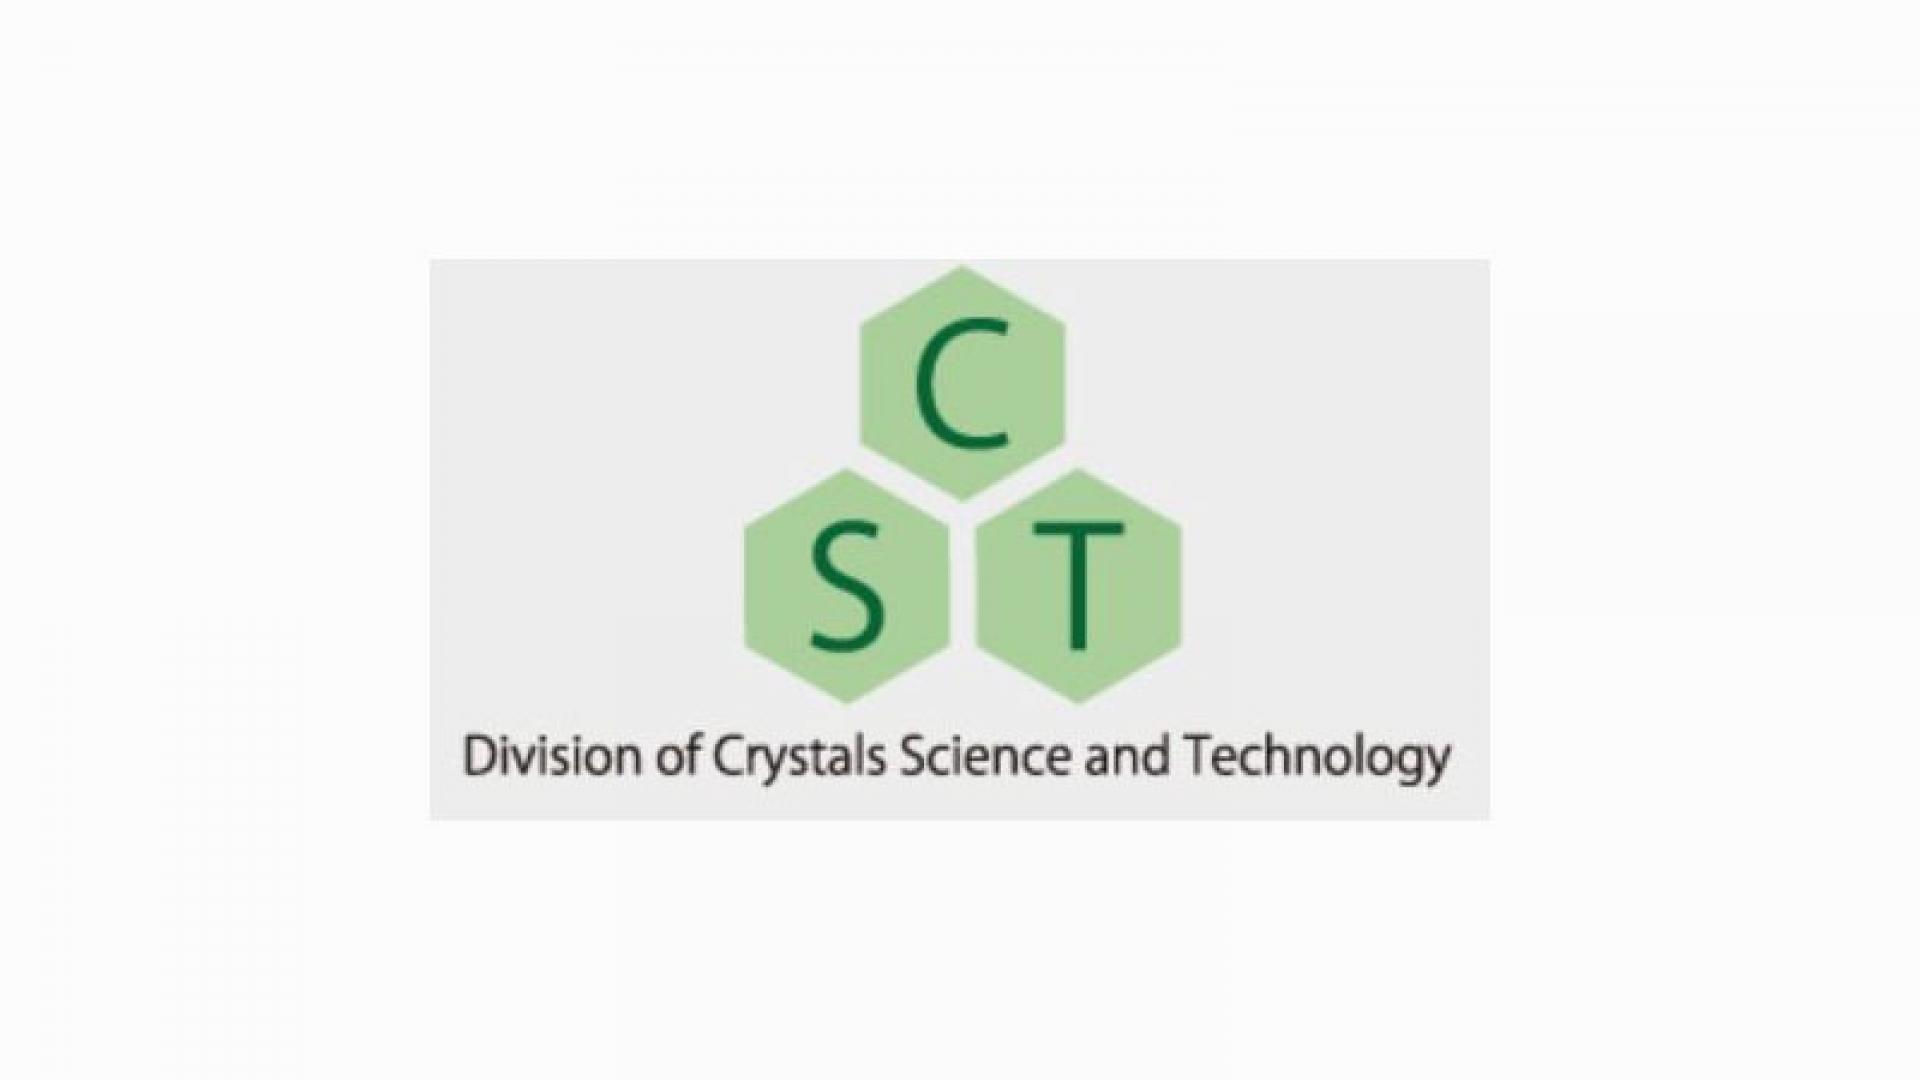 Crystals Science